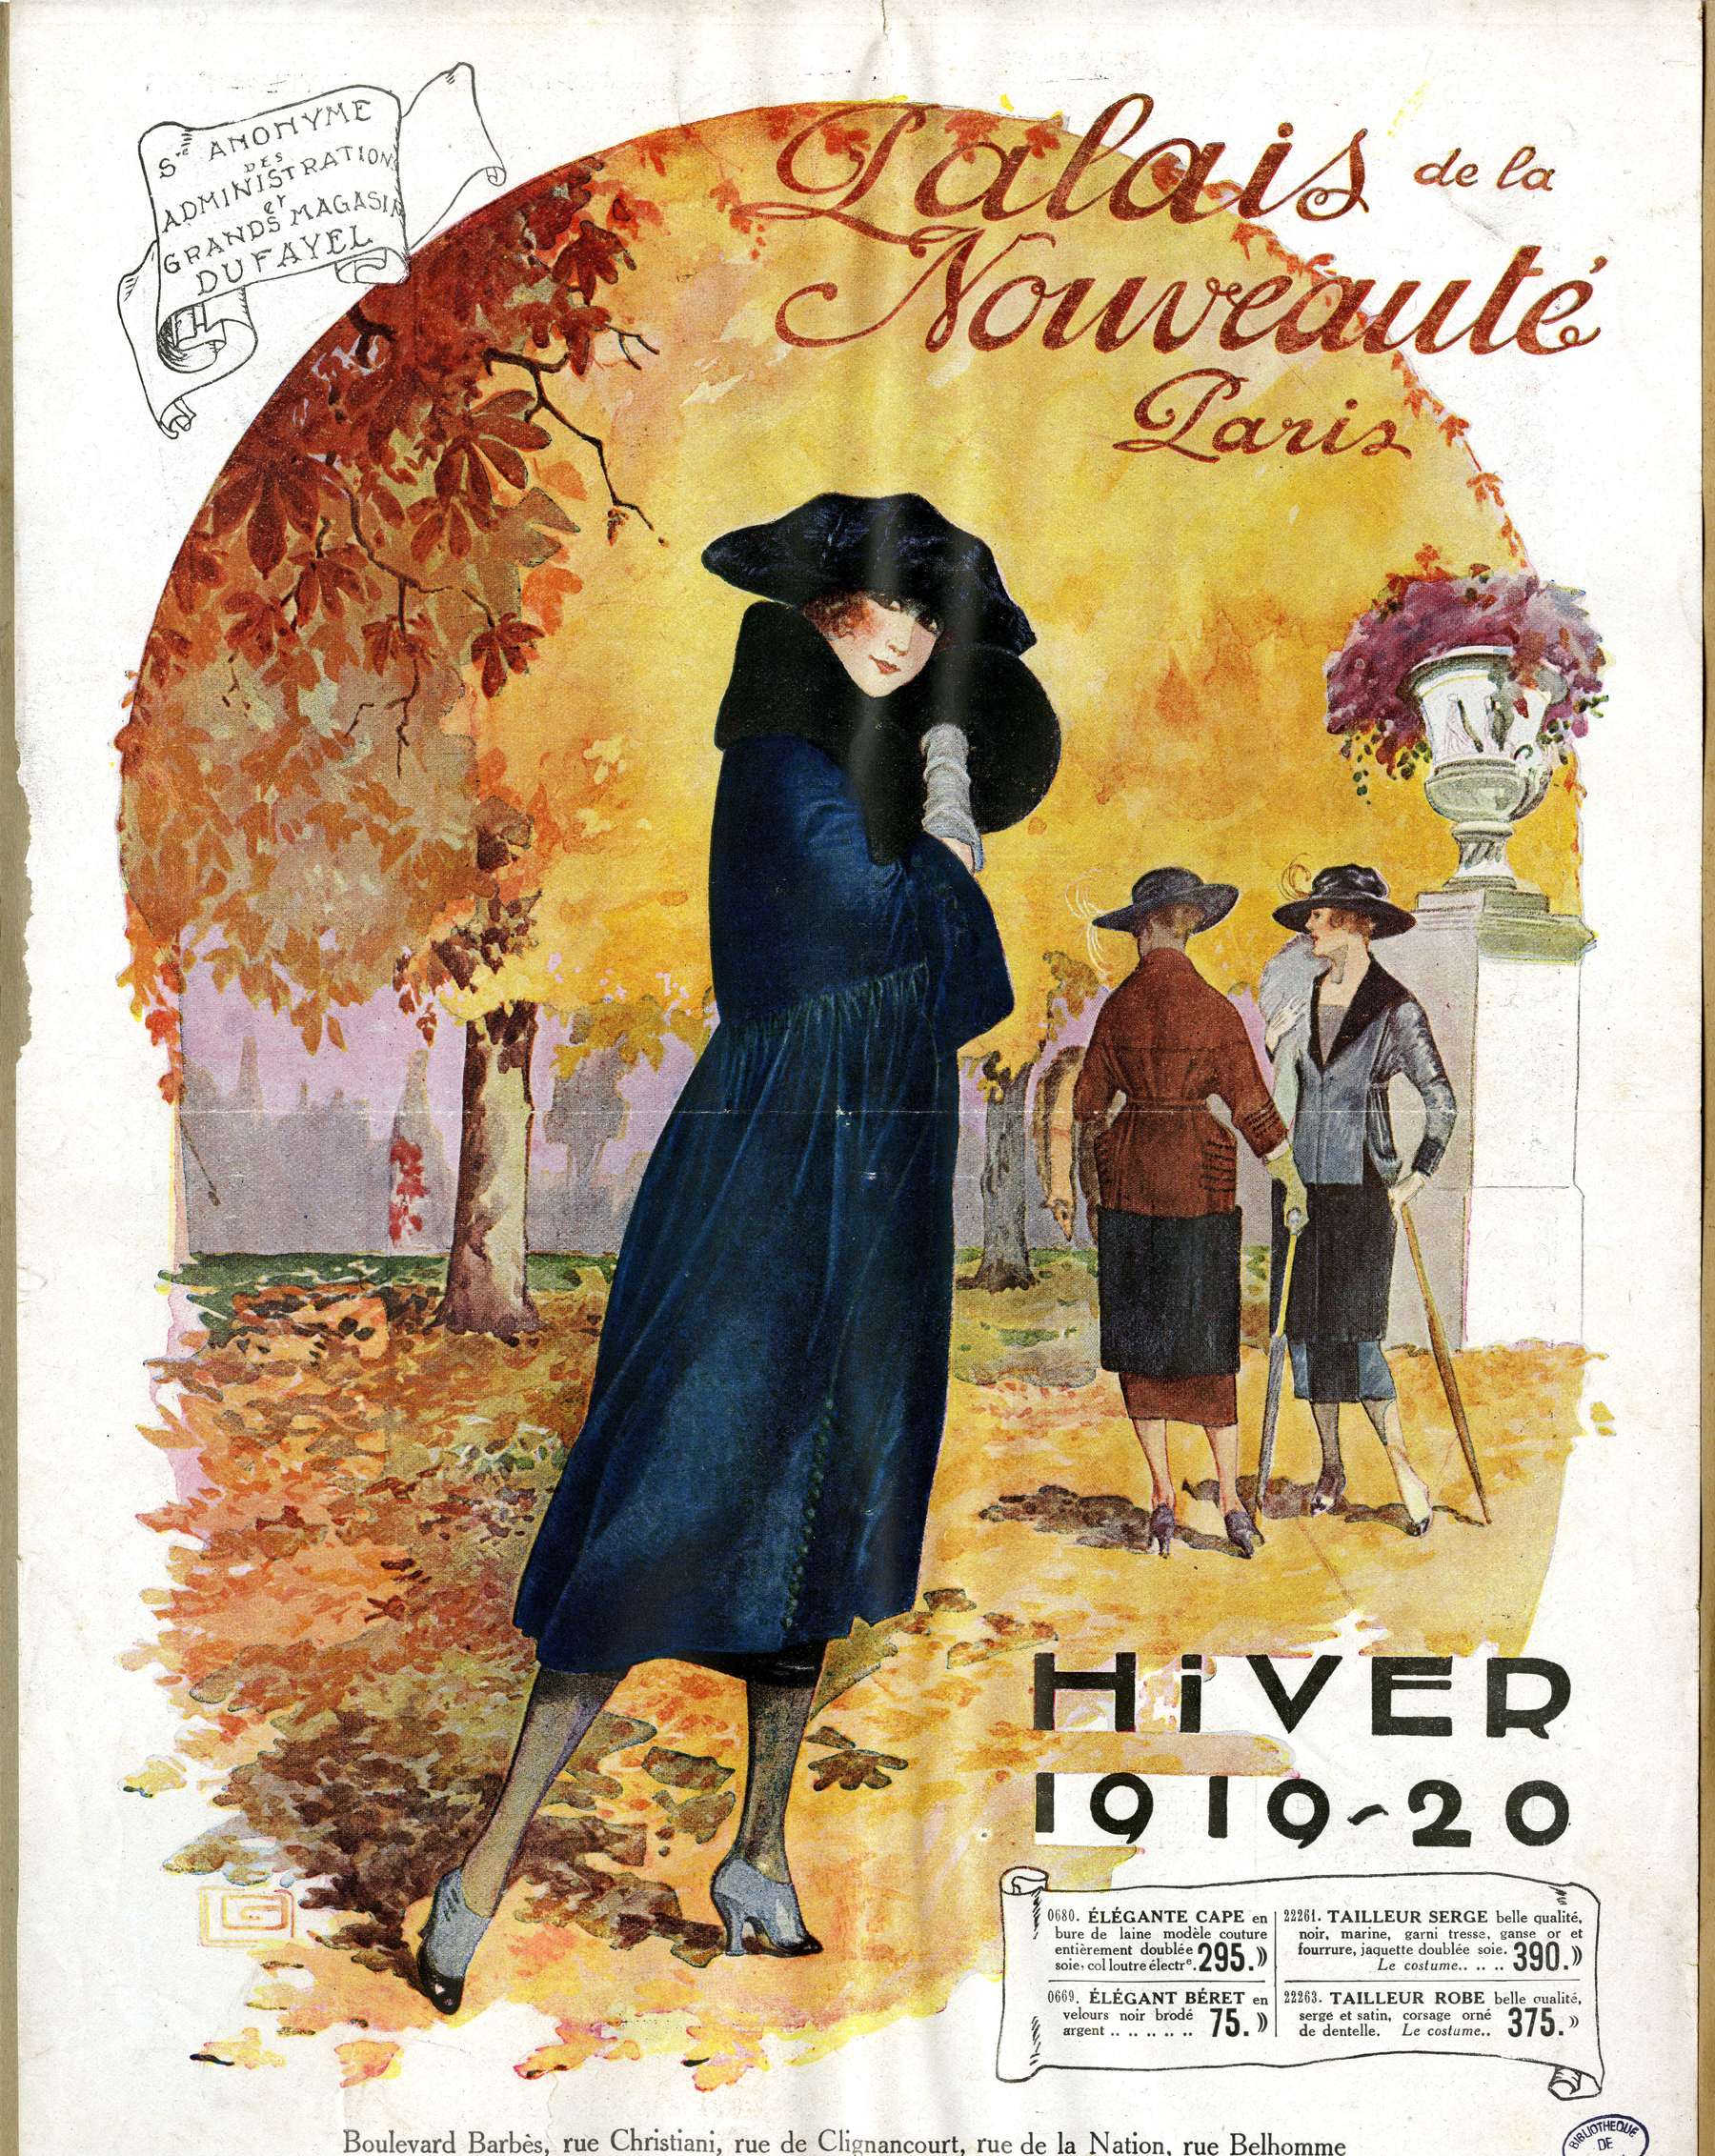 Contenu du Palais de la nouveauté : hiver 1919-20